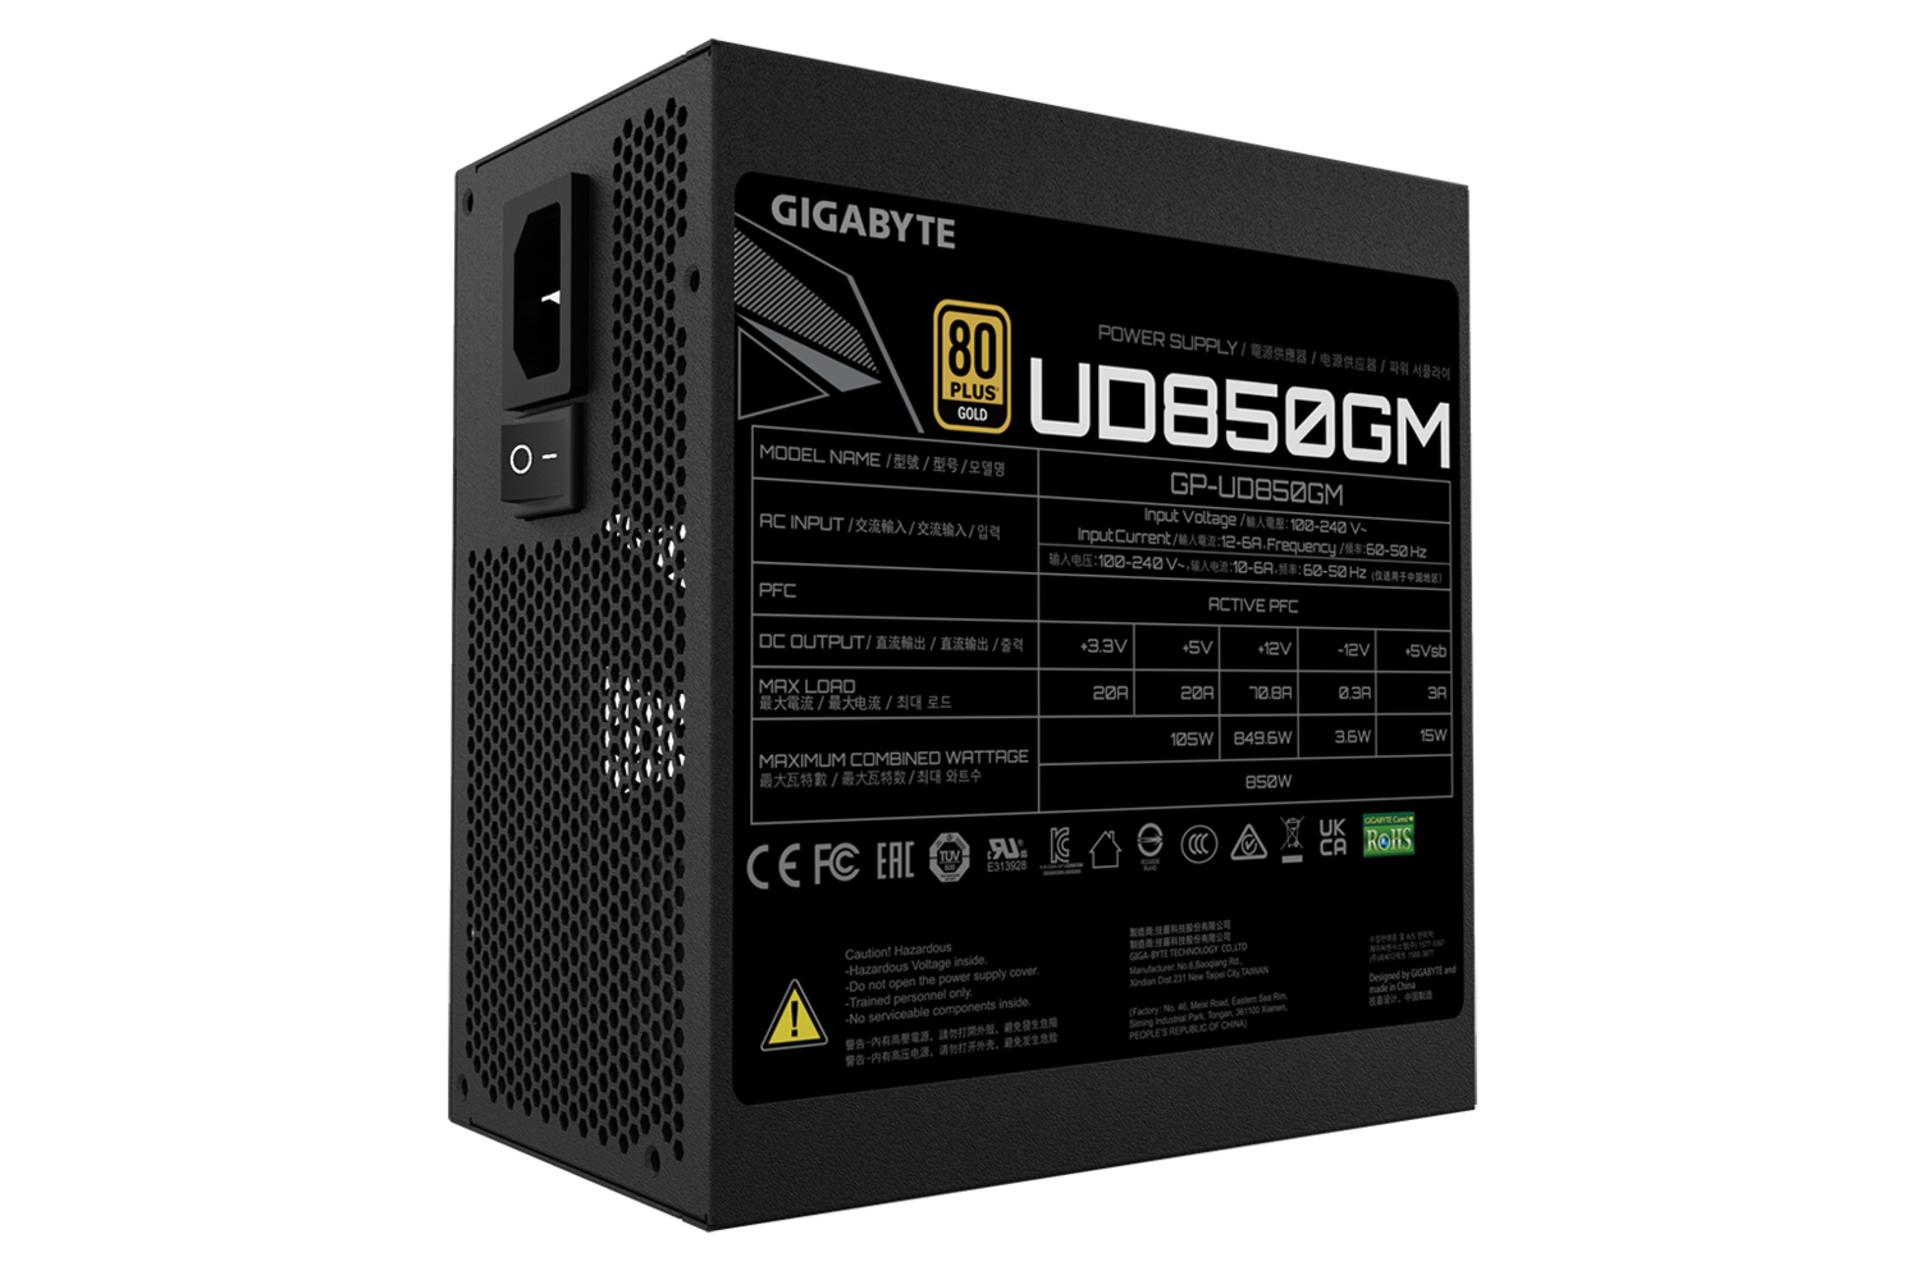 توان پاور کامپیوتر گیگابایت GIGABYTE UD850GM با توان 850 وات